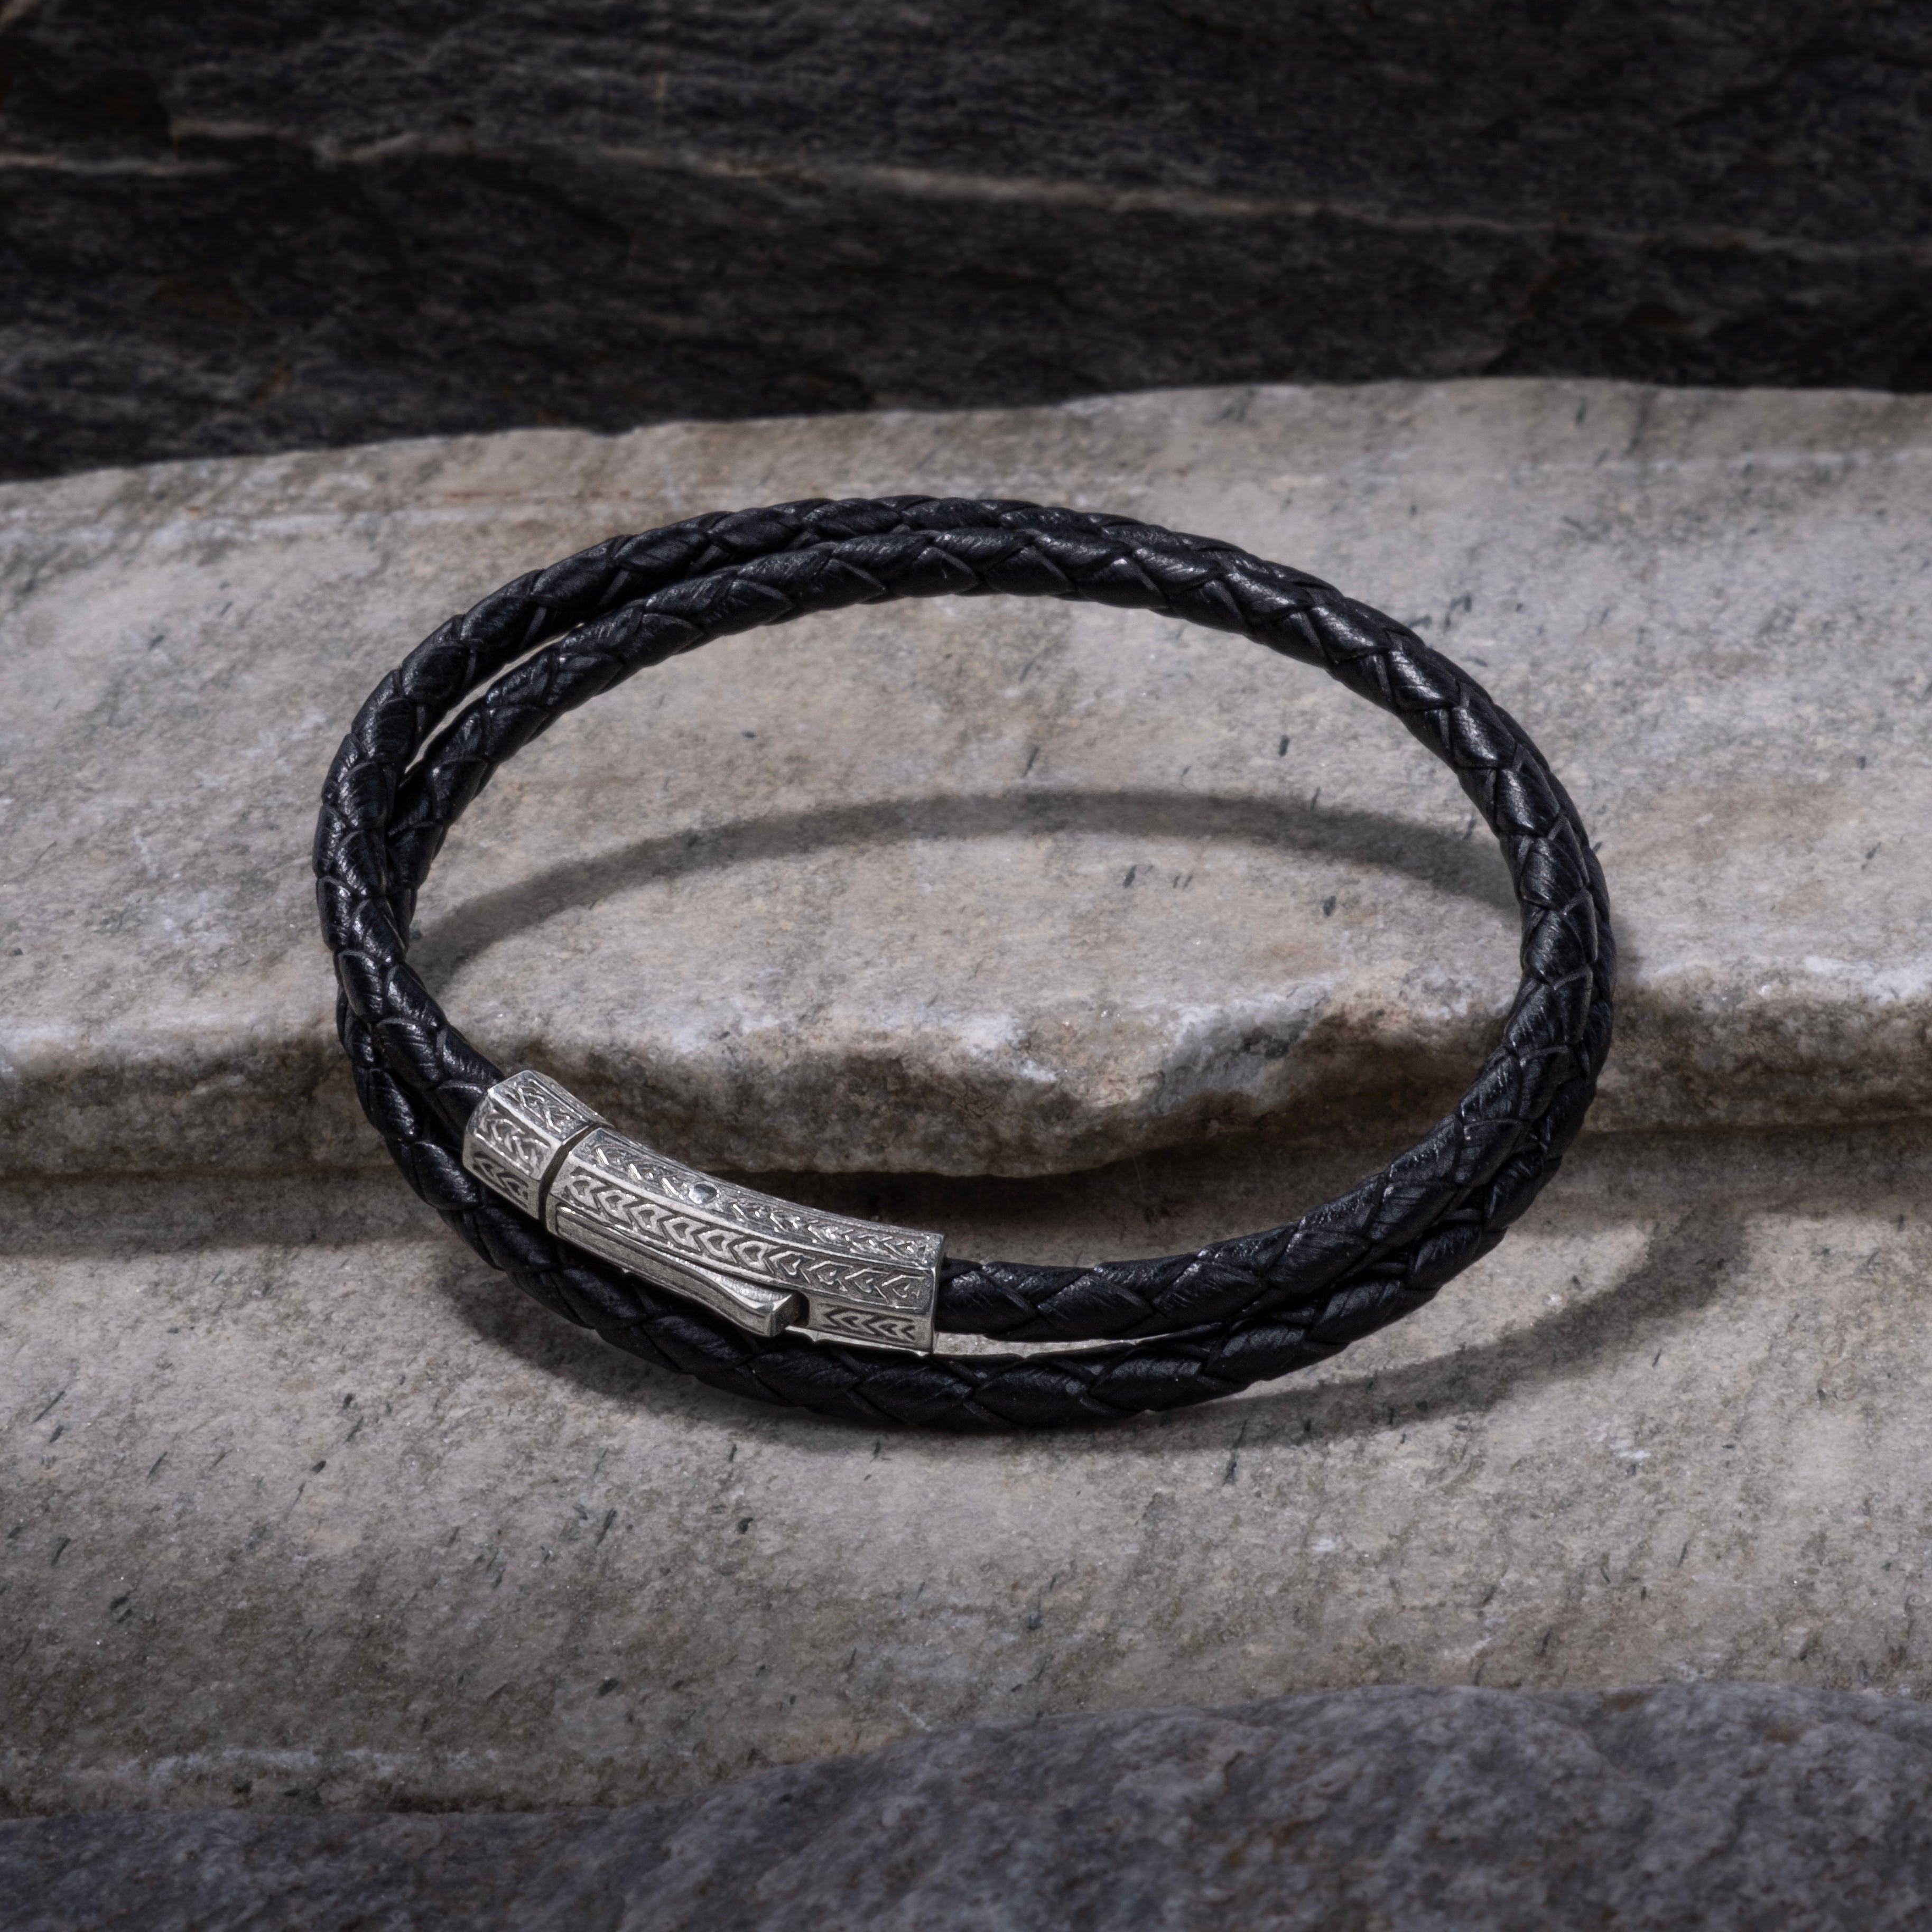 Black Double Leather Bracelet in Silver